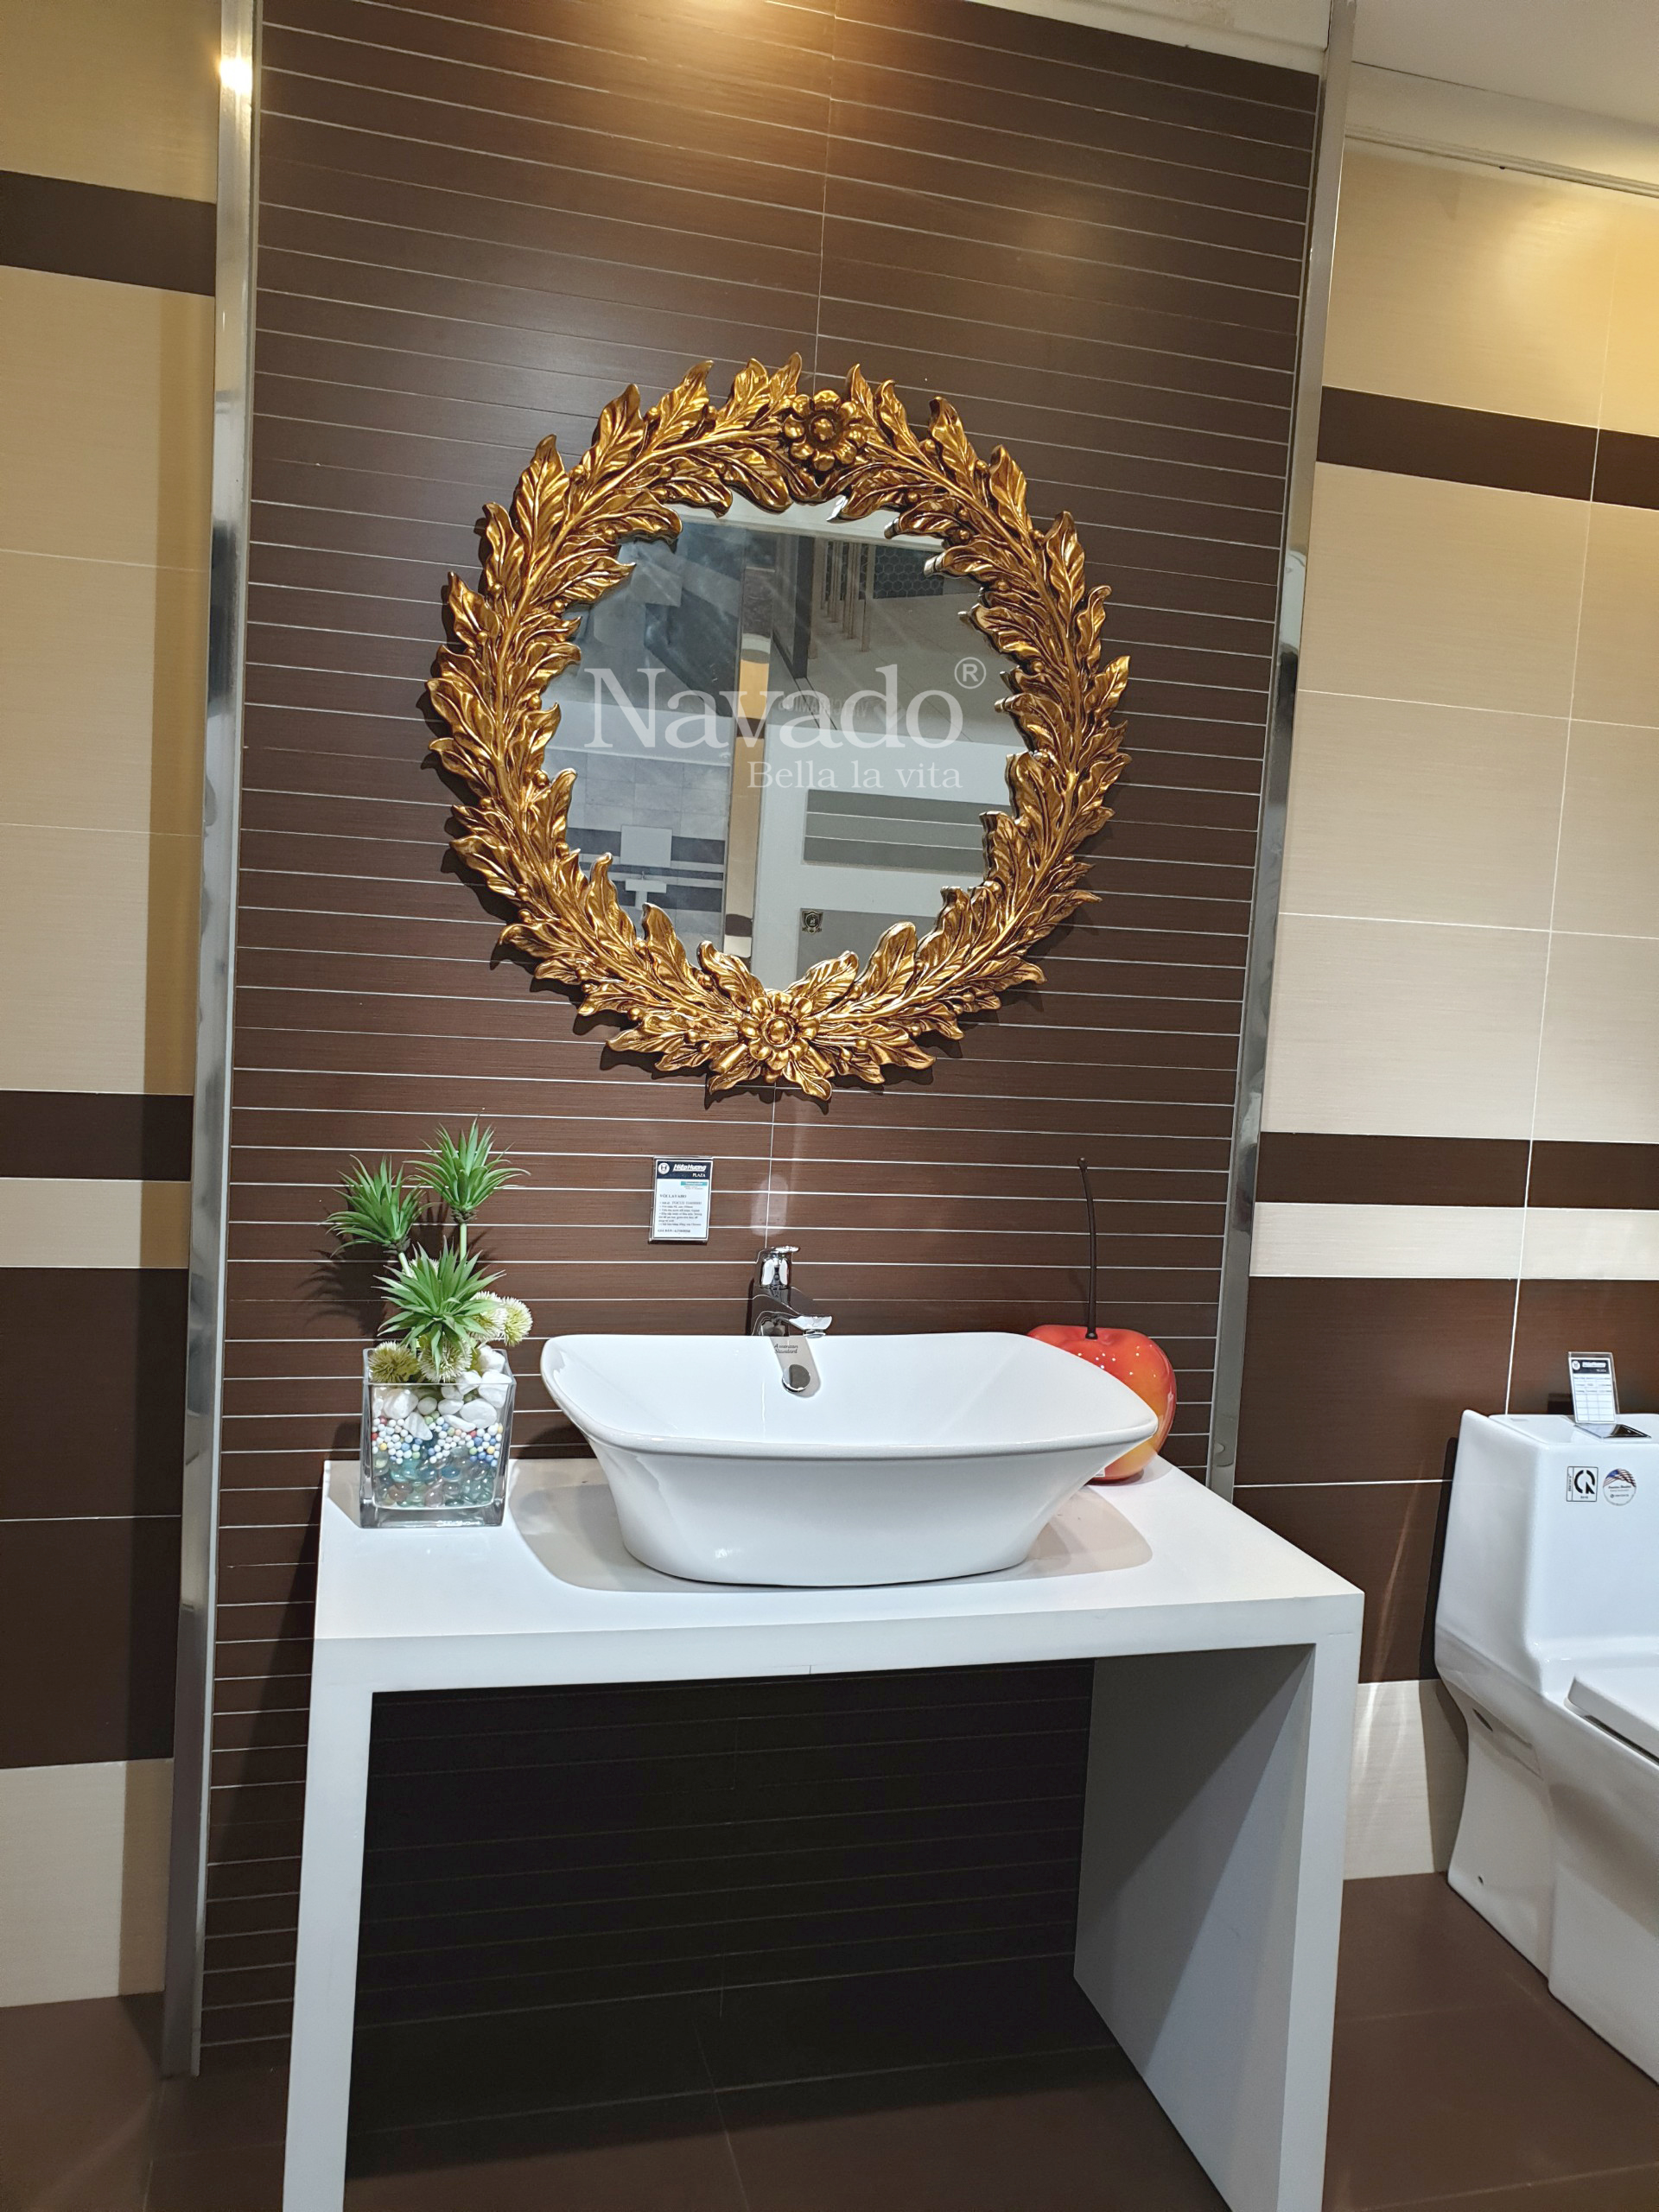 Bạn đang tìm kiếm một chiếc gương tròn treo dây da cao cấp để trang trí cho phòng tắm của mình? Hãy tham khảo sản phẩm gương tròn Navado